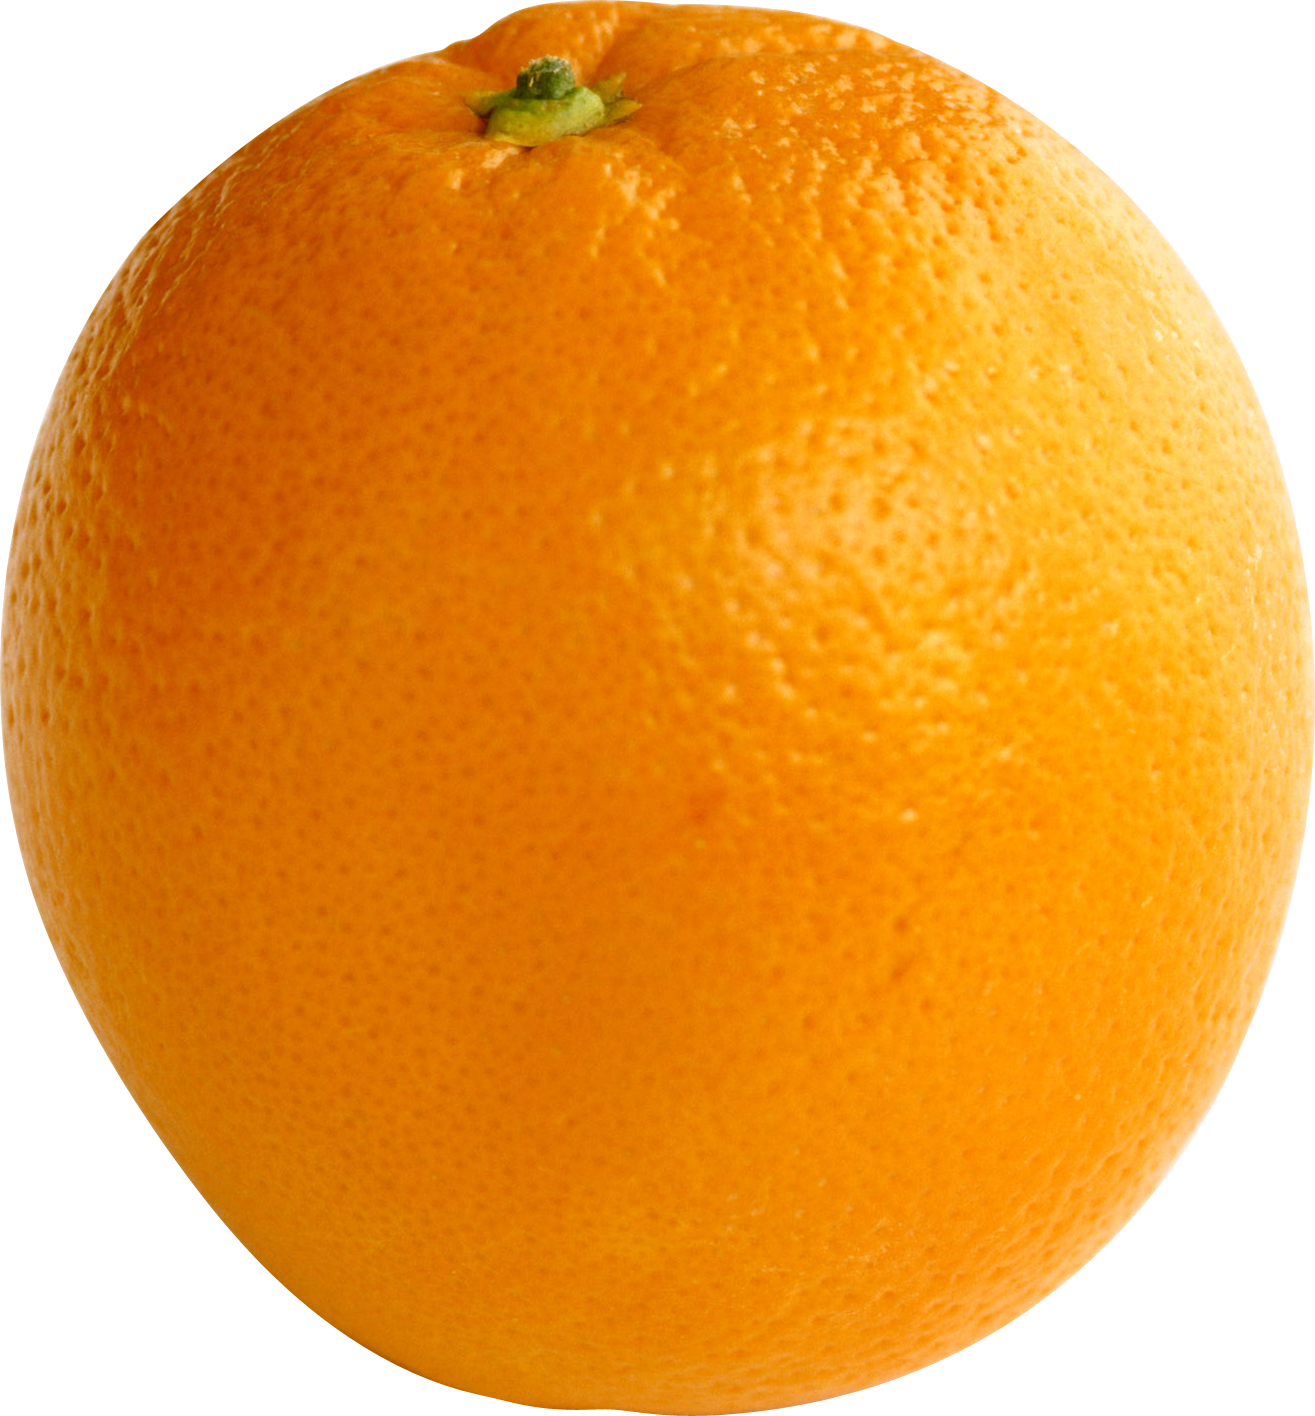 Khám phá loại trái cây tươi ngon đầy vitamin này với hình ảnh cam chín lớn PNG trong suốt đẹp mắt. Tải xuống và sử dụng kích thước phù hợp cho bất kỳ dự án nào của bạn.